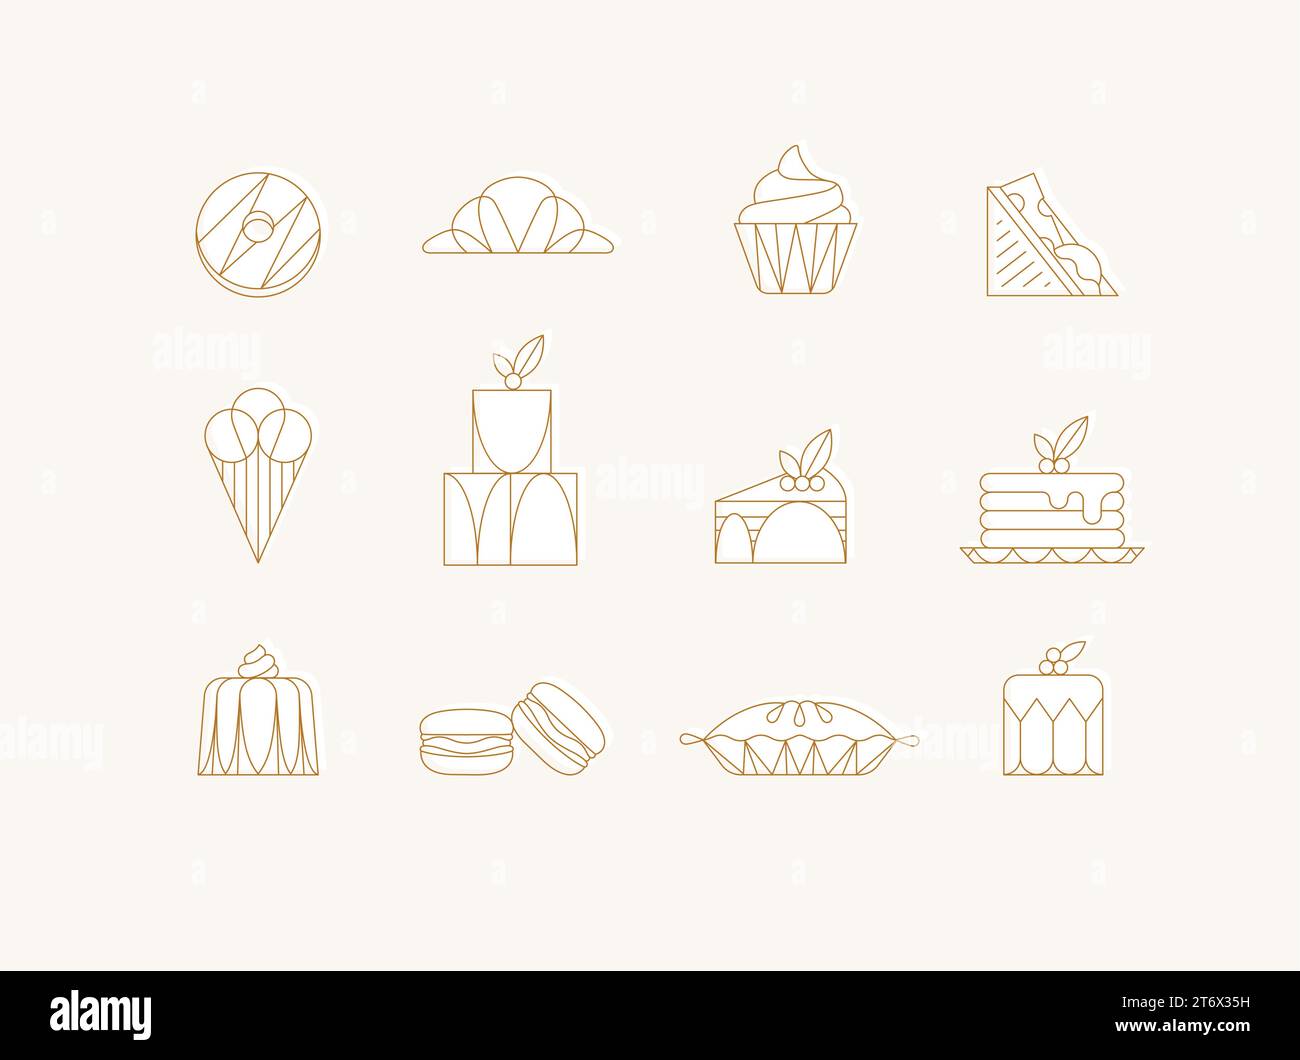 Iconos de postre en donut estilo art deco, croissant, cupcake, sándwich, helado, pastel, postre, panqueques, macarrones, pastel de jalea dibujo con blanco encendido Ilustración del Vector